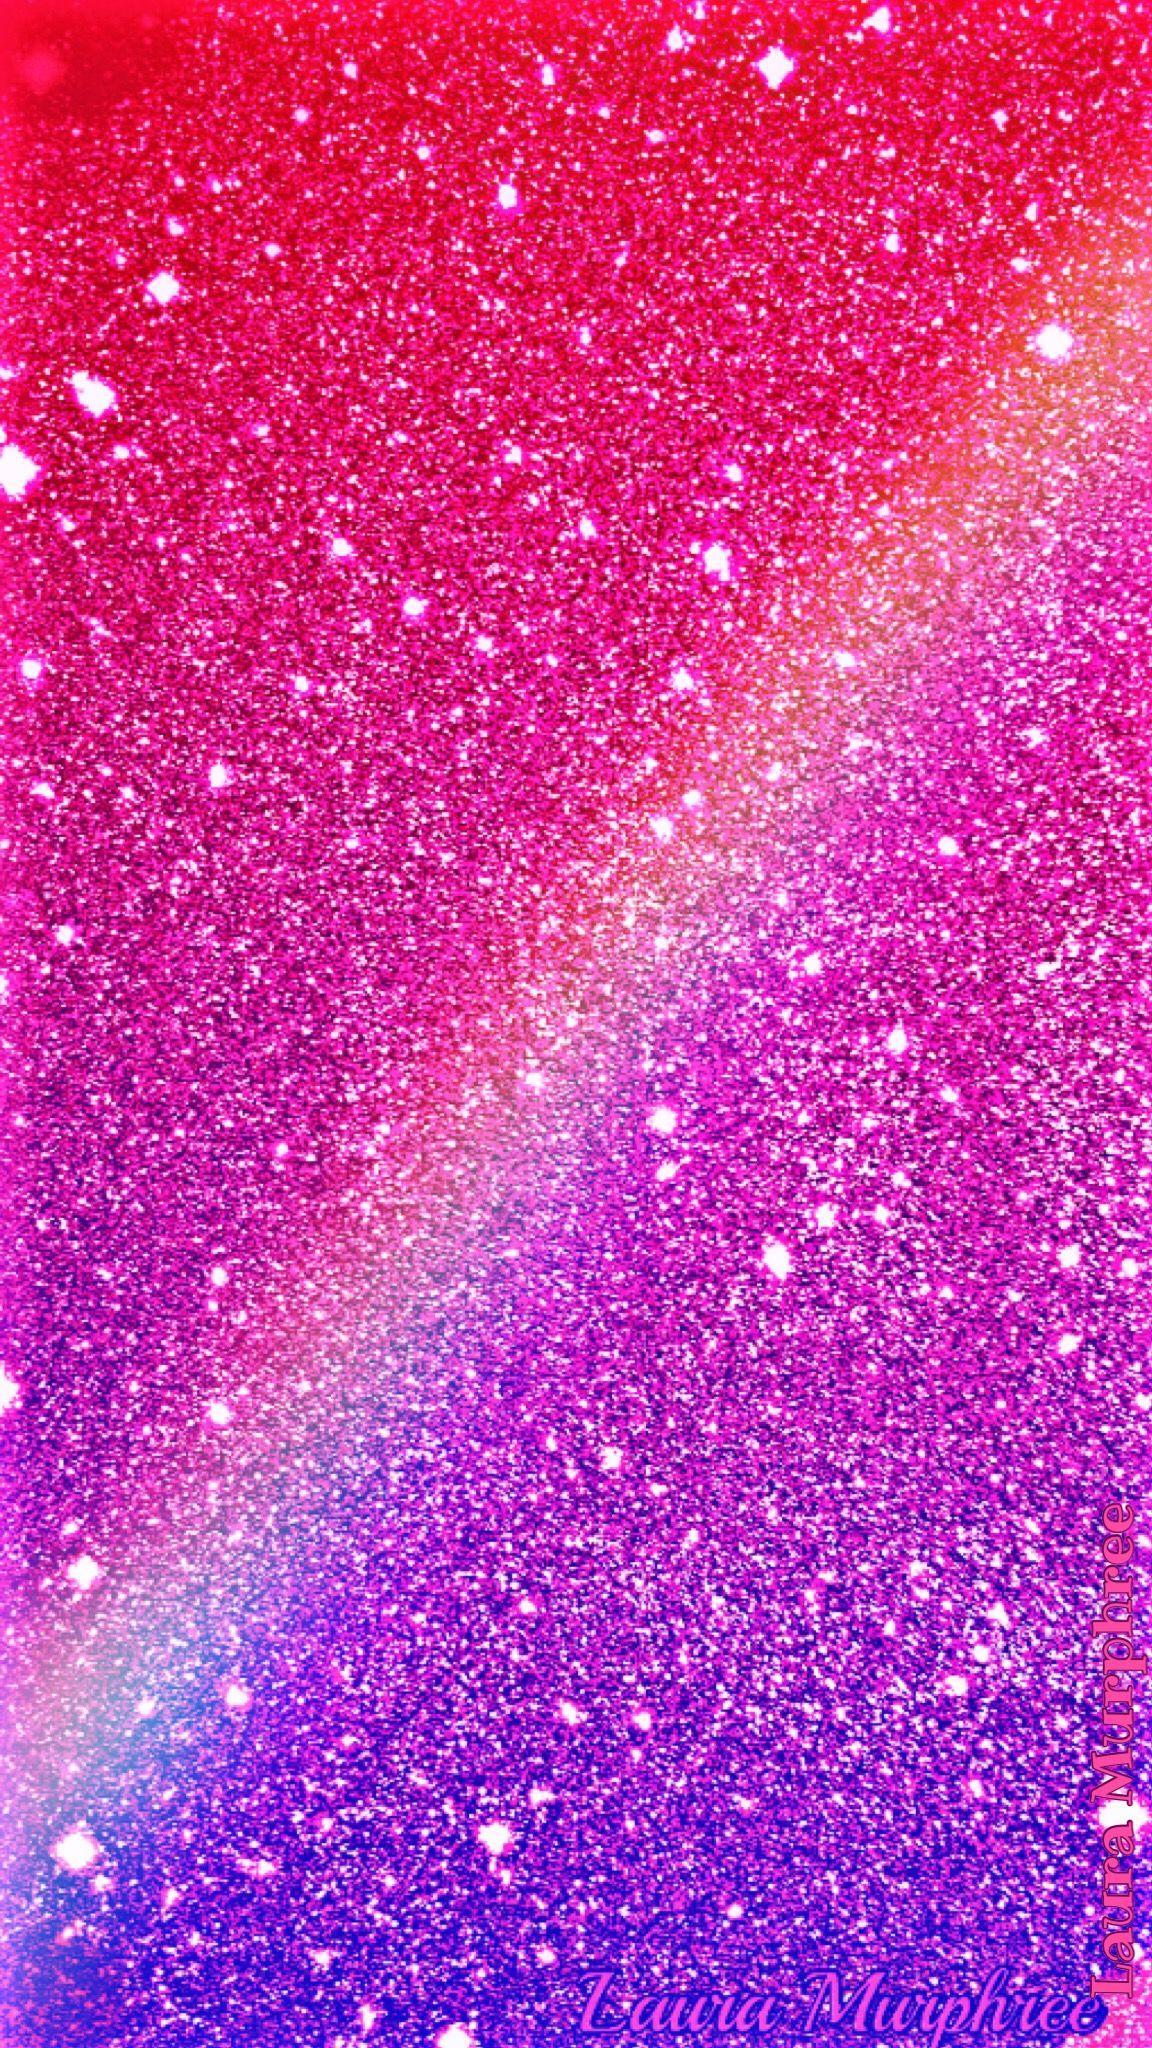 Pink Glitter Unicorn Wallpaper